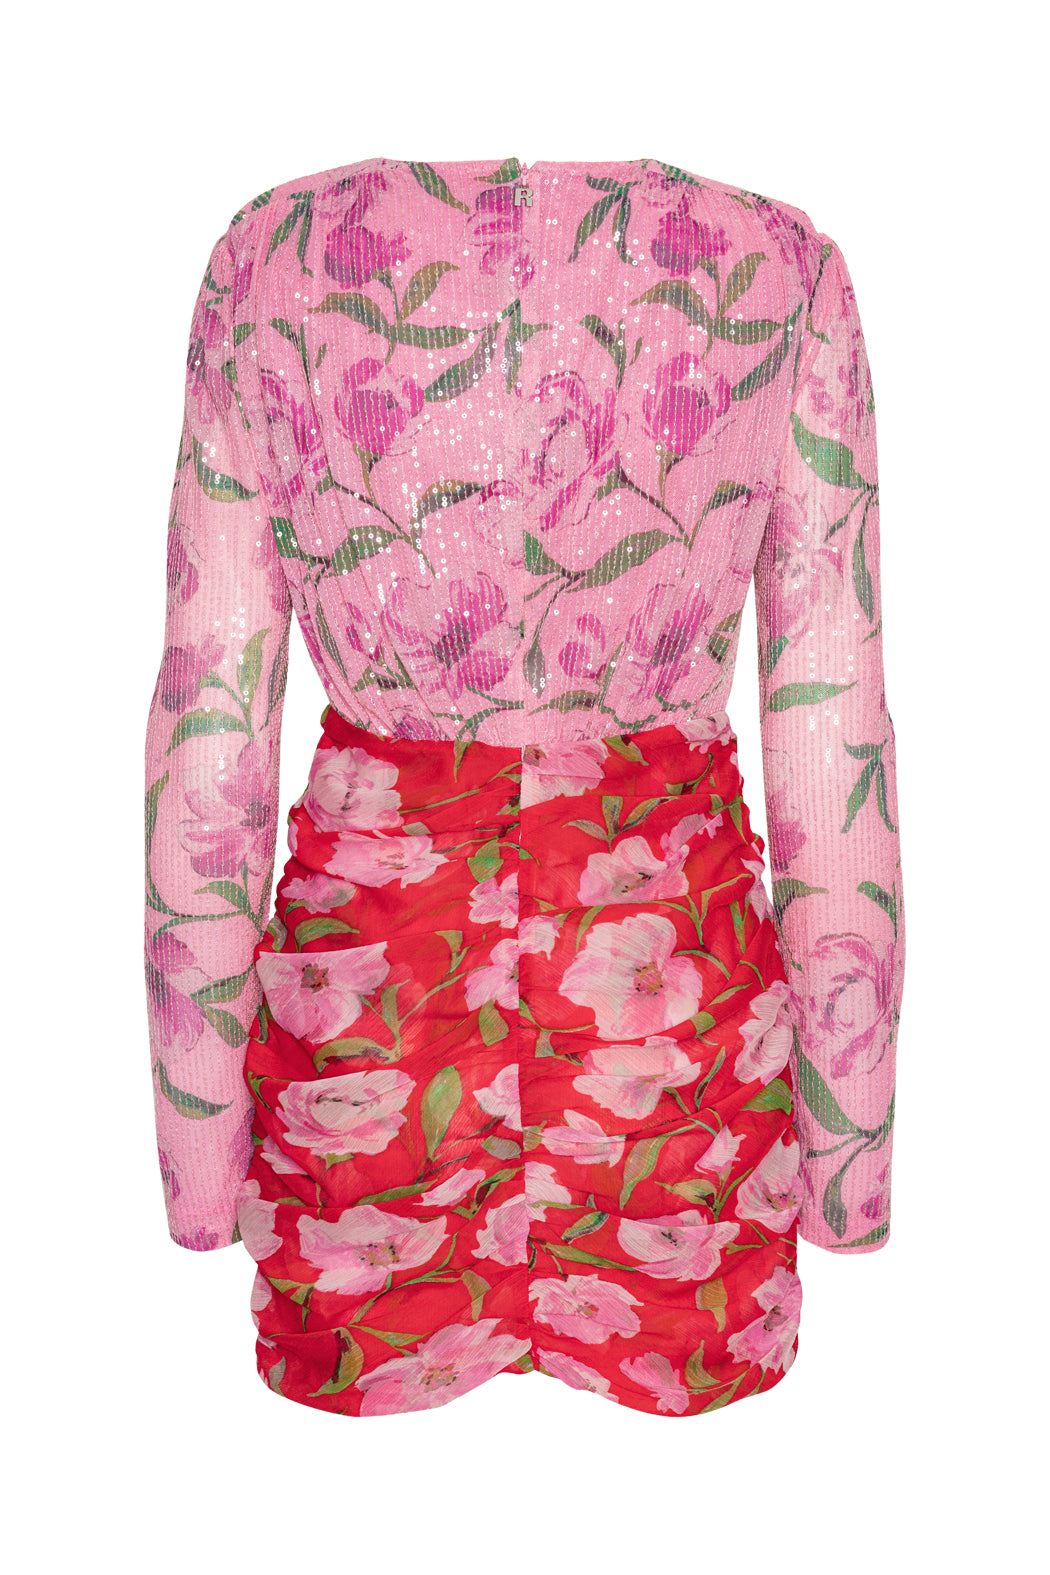 Printed Mini Ls Dress - Wildeve + Prism Pink
Comb